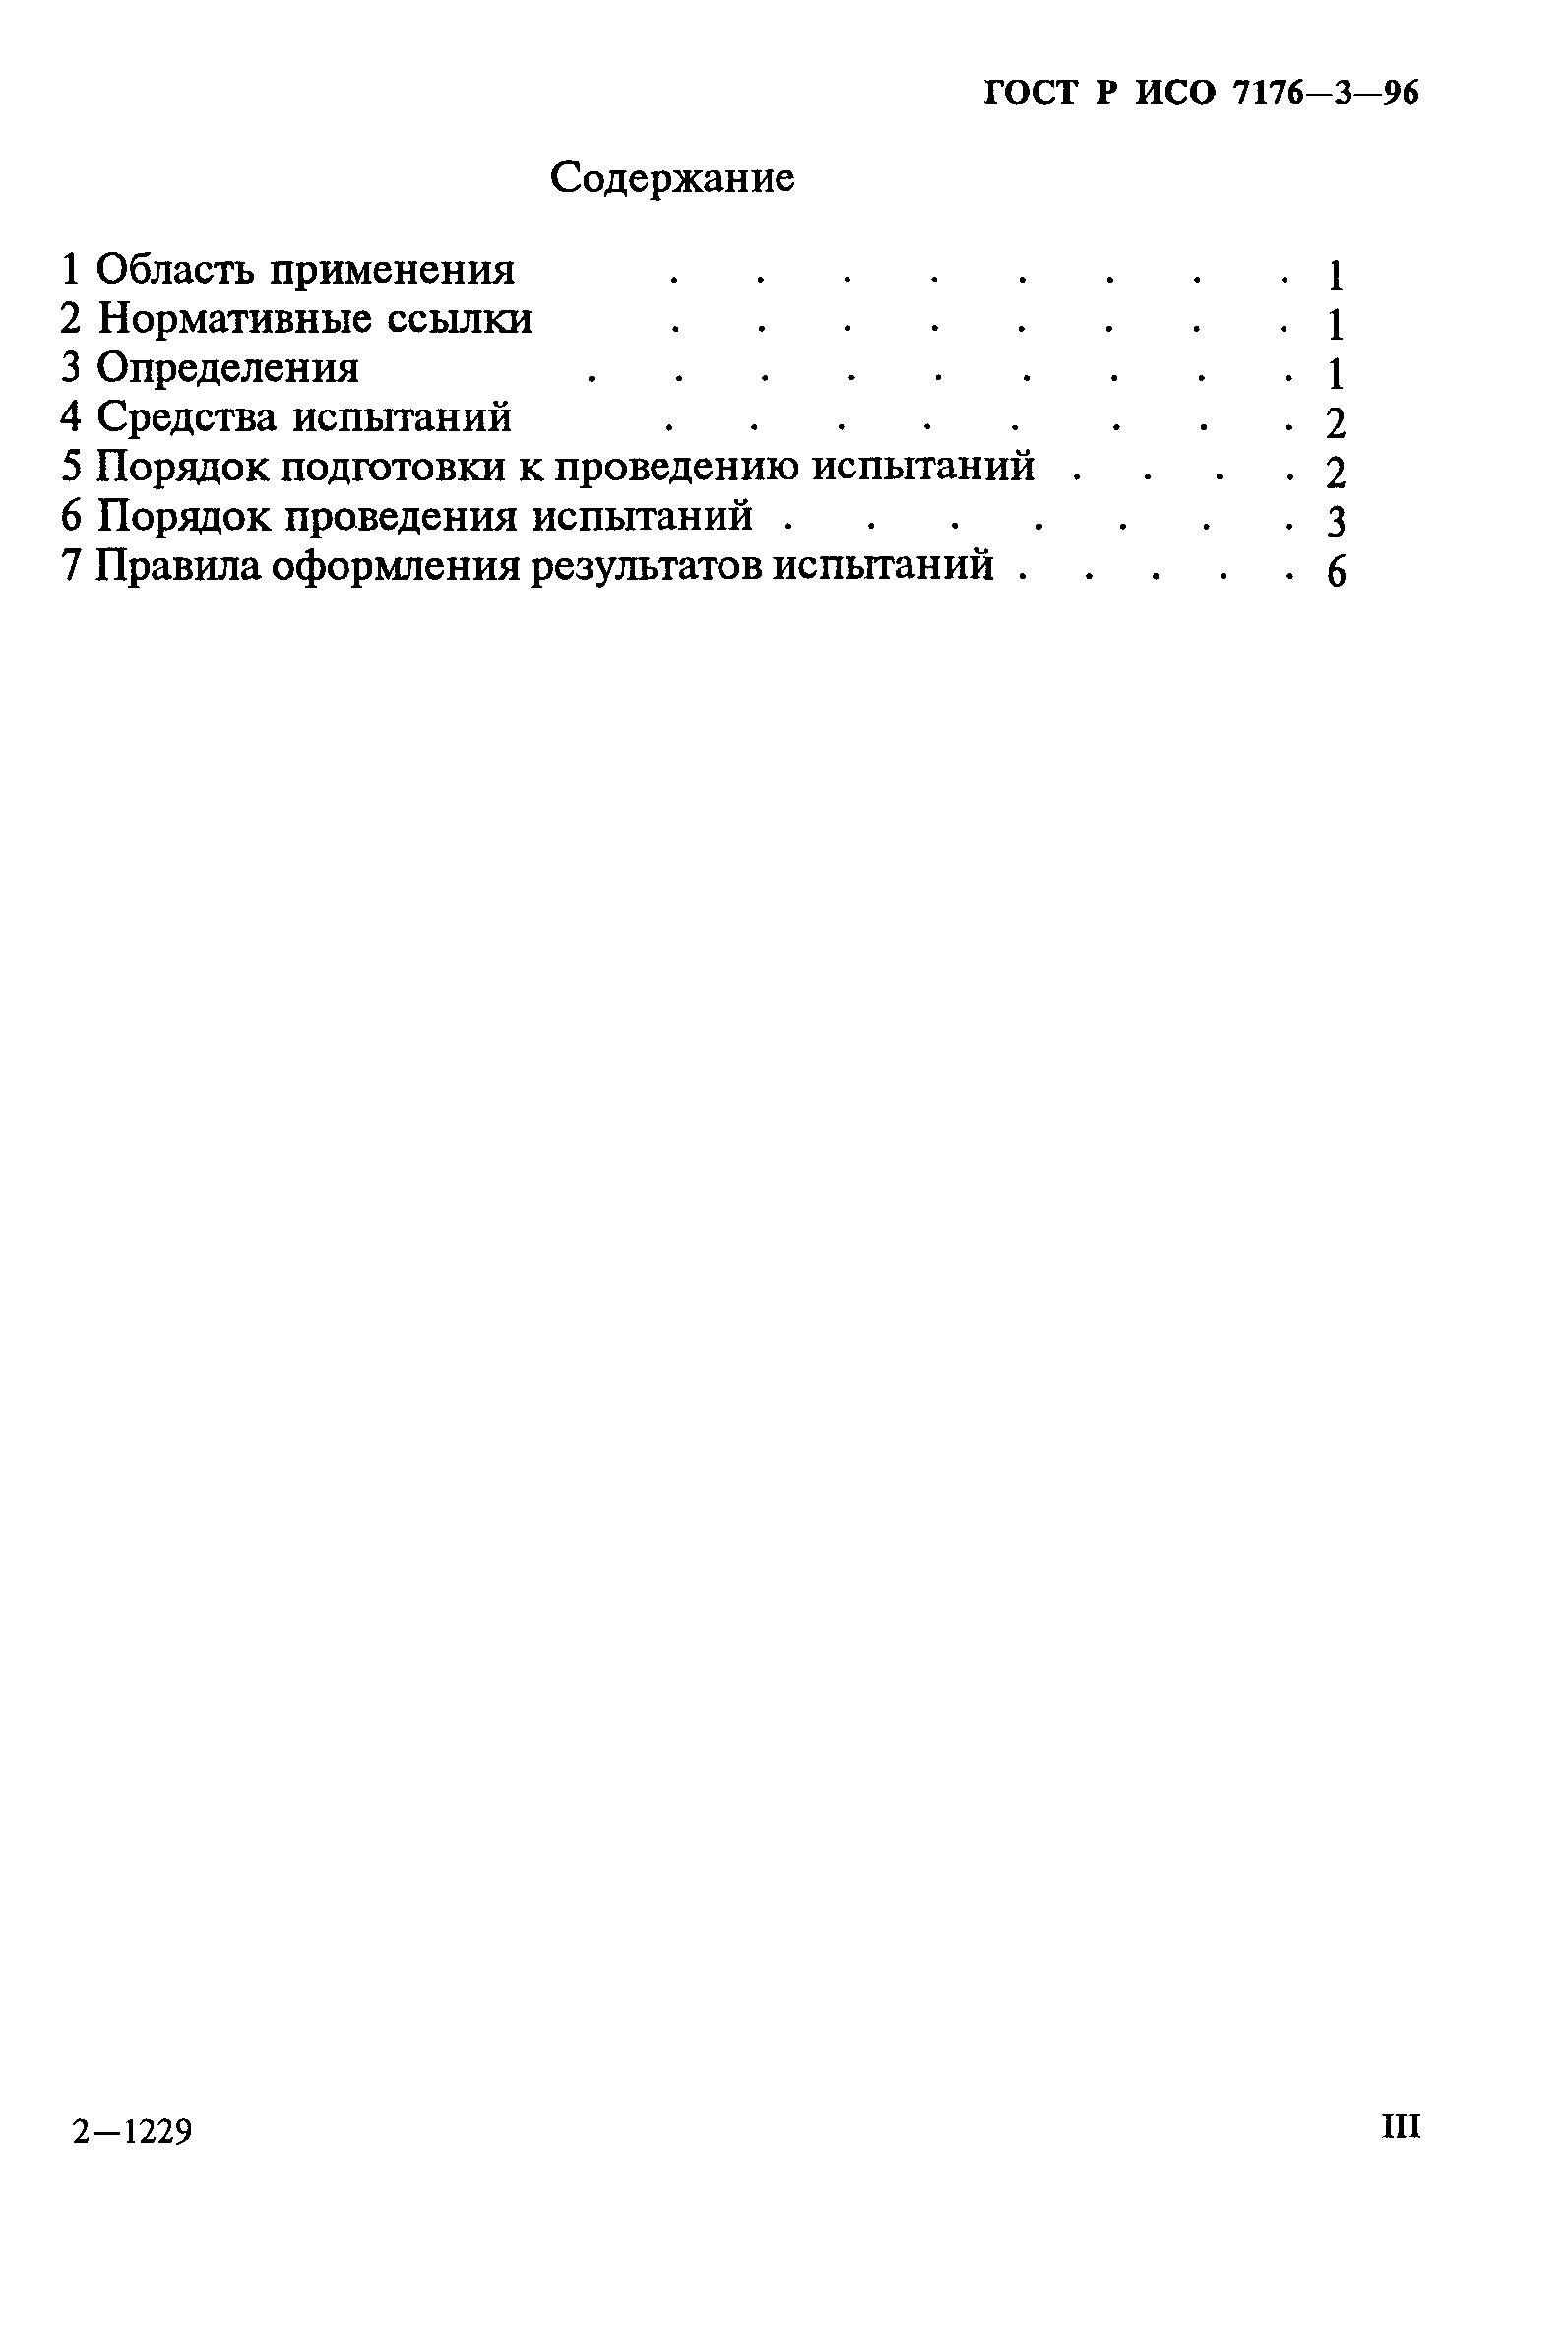 ГОСТ Р ИСО 7176-3-96